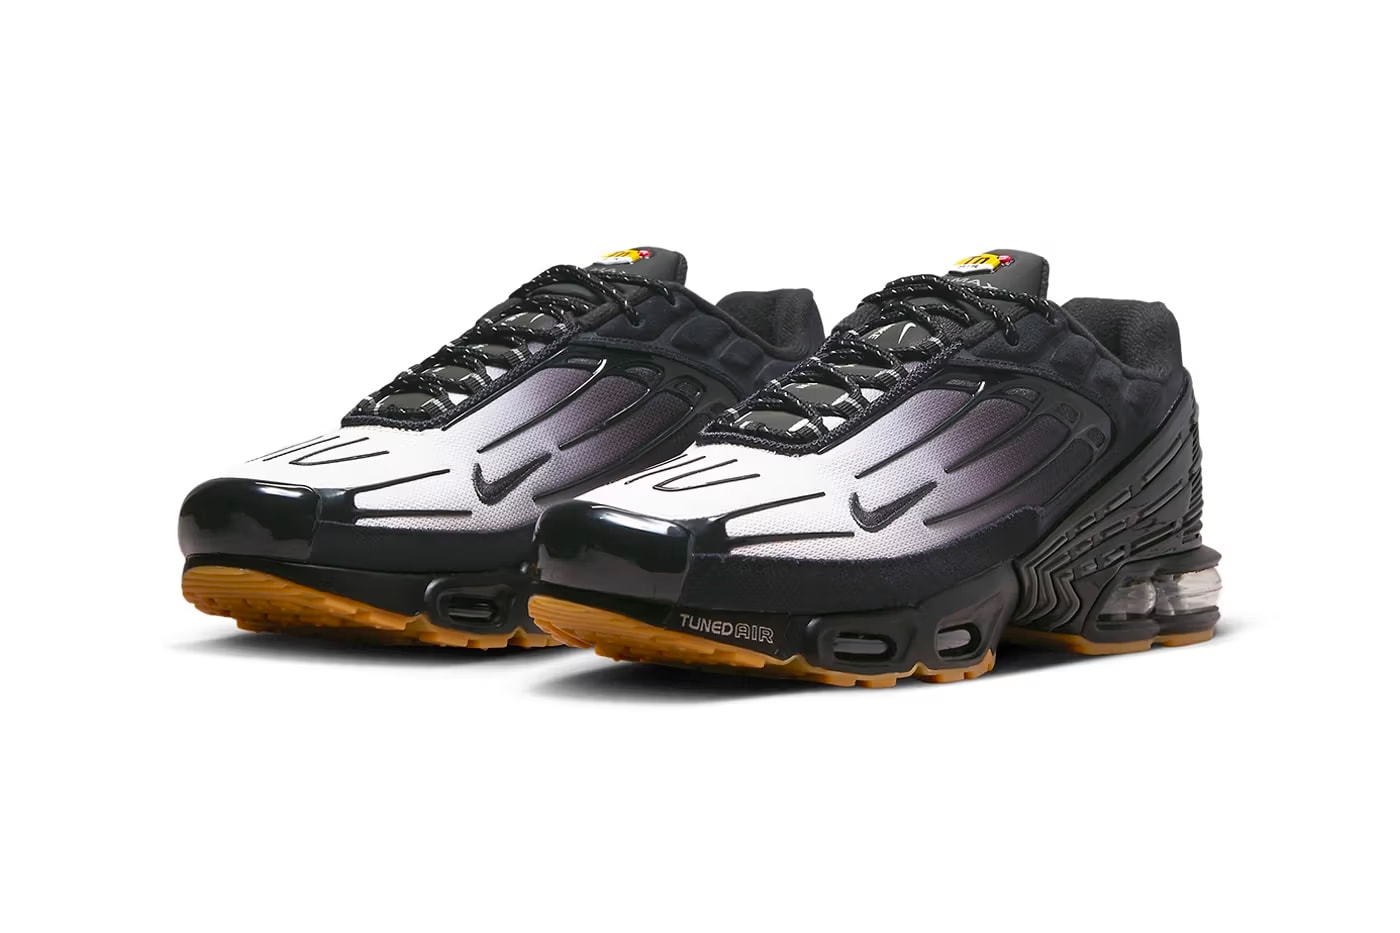 nike air max plus 3 "black/gum" sneakers footwear release info where to buy 